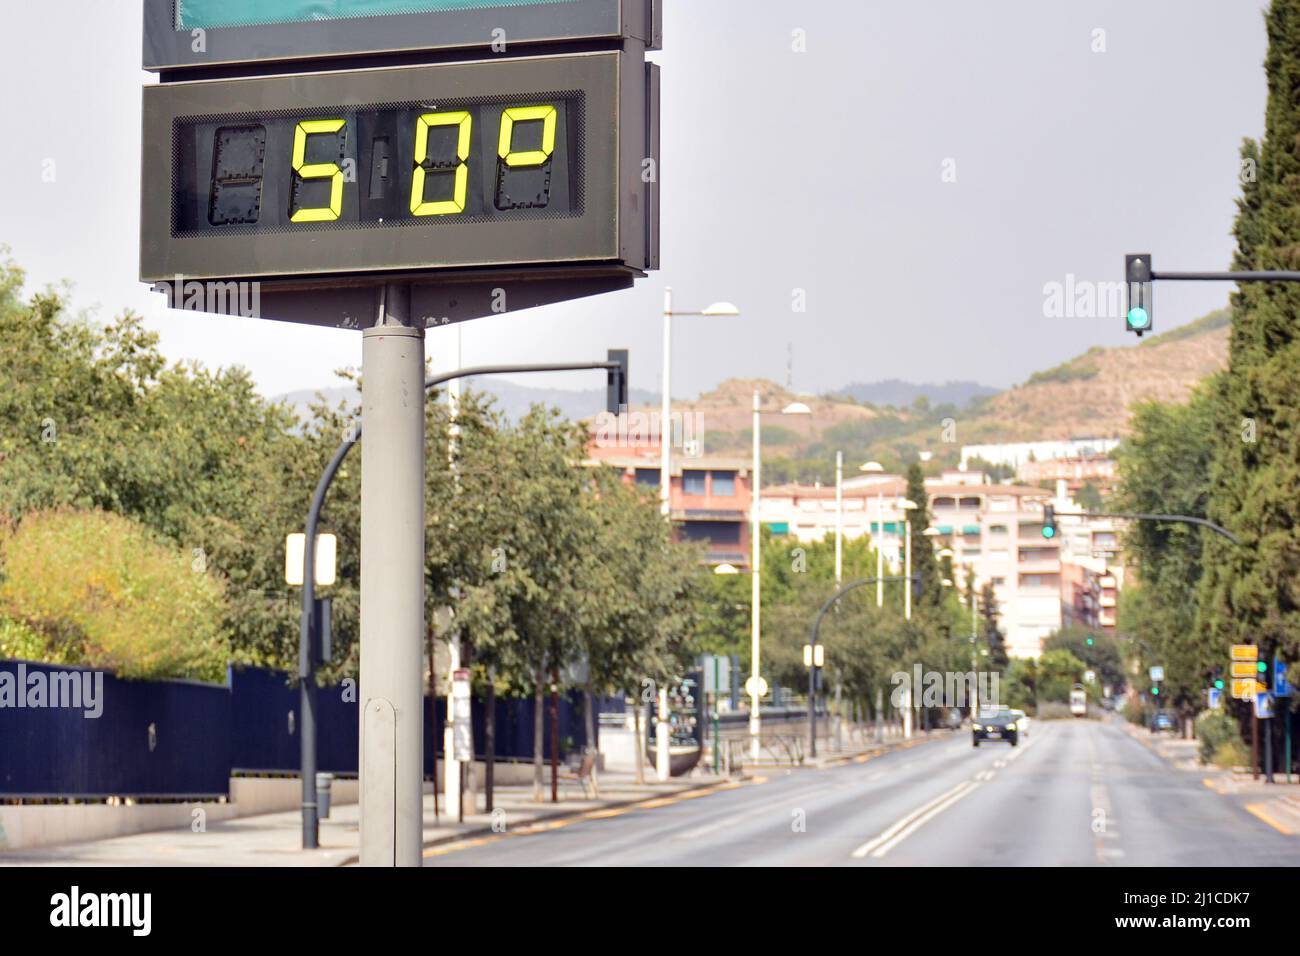 Termómetro callejero en una calle marcando 50 grados celsius Stock Photo